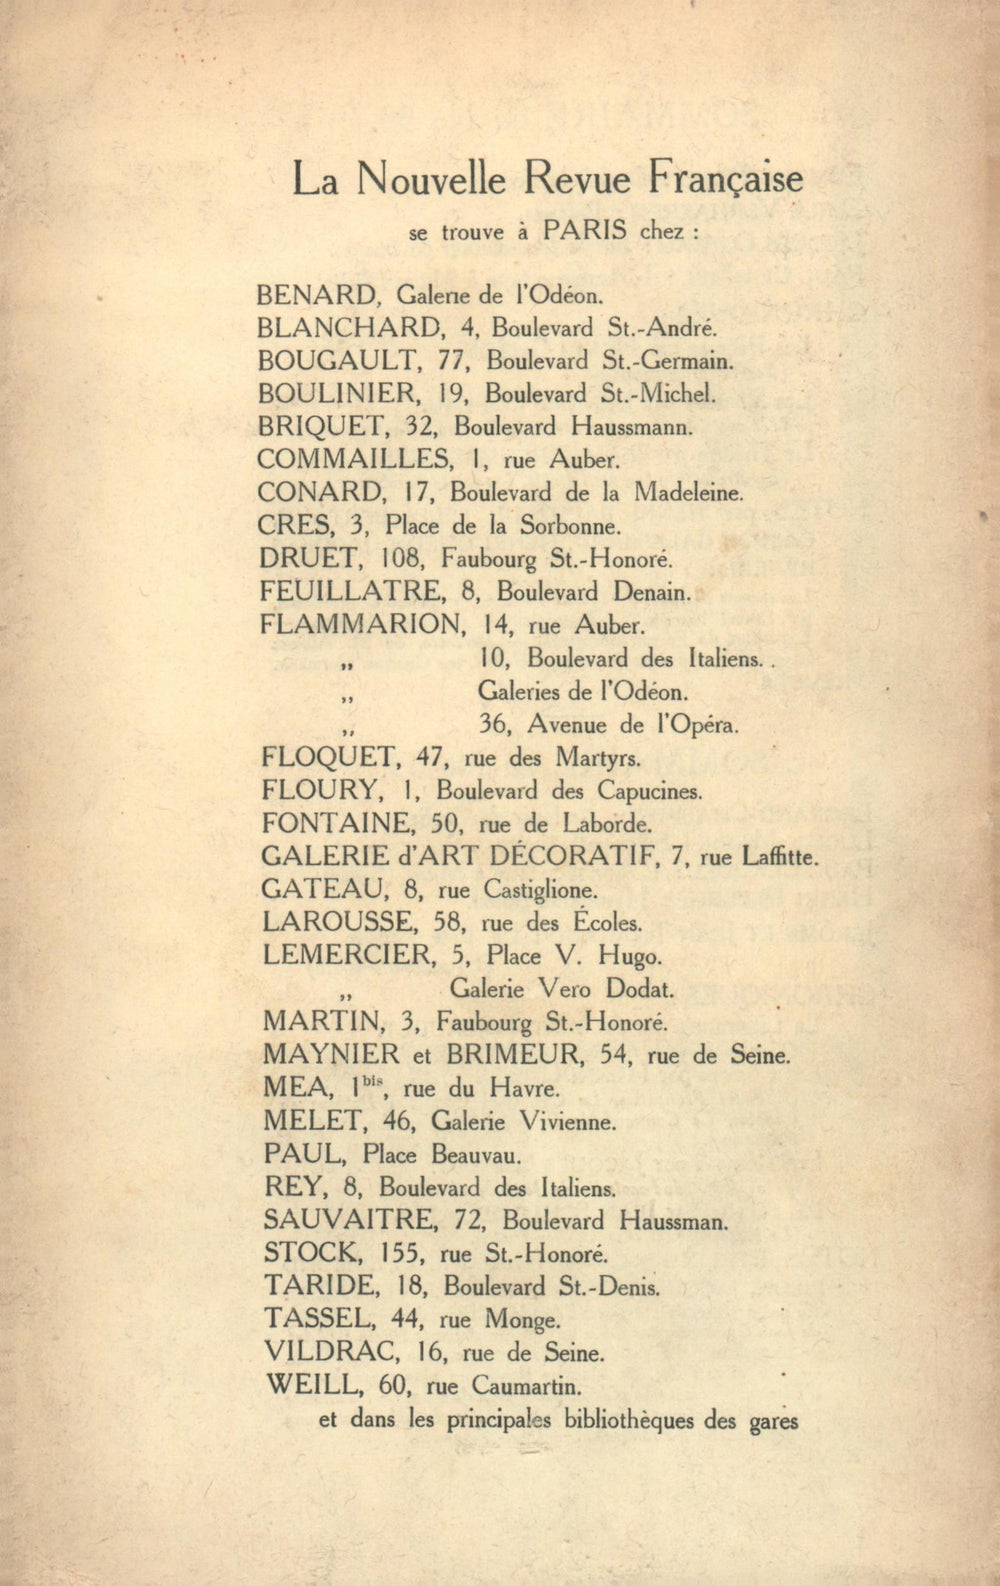 La Nouvelle Revue Française N' 40 (Avril 1912)